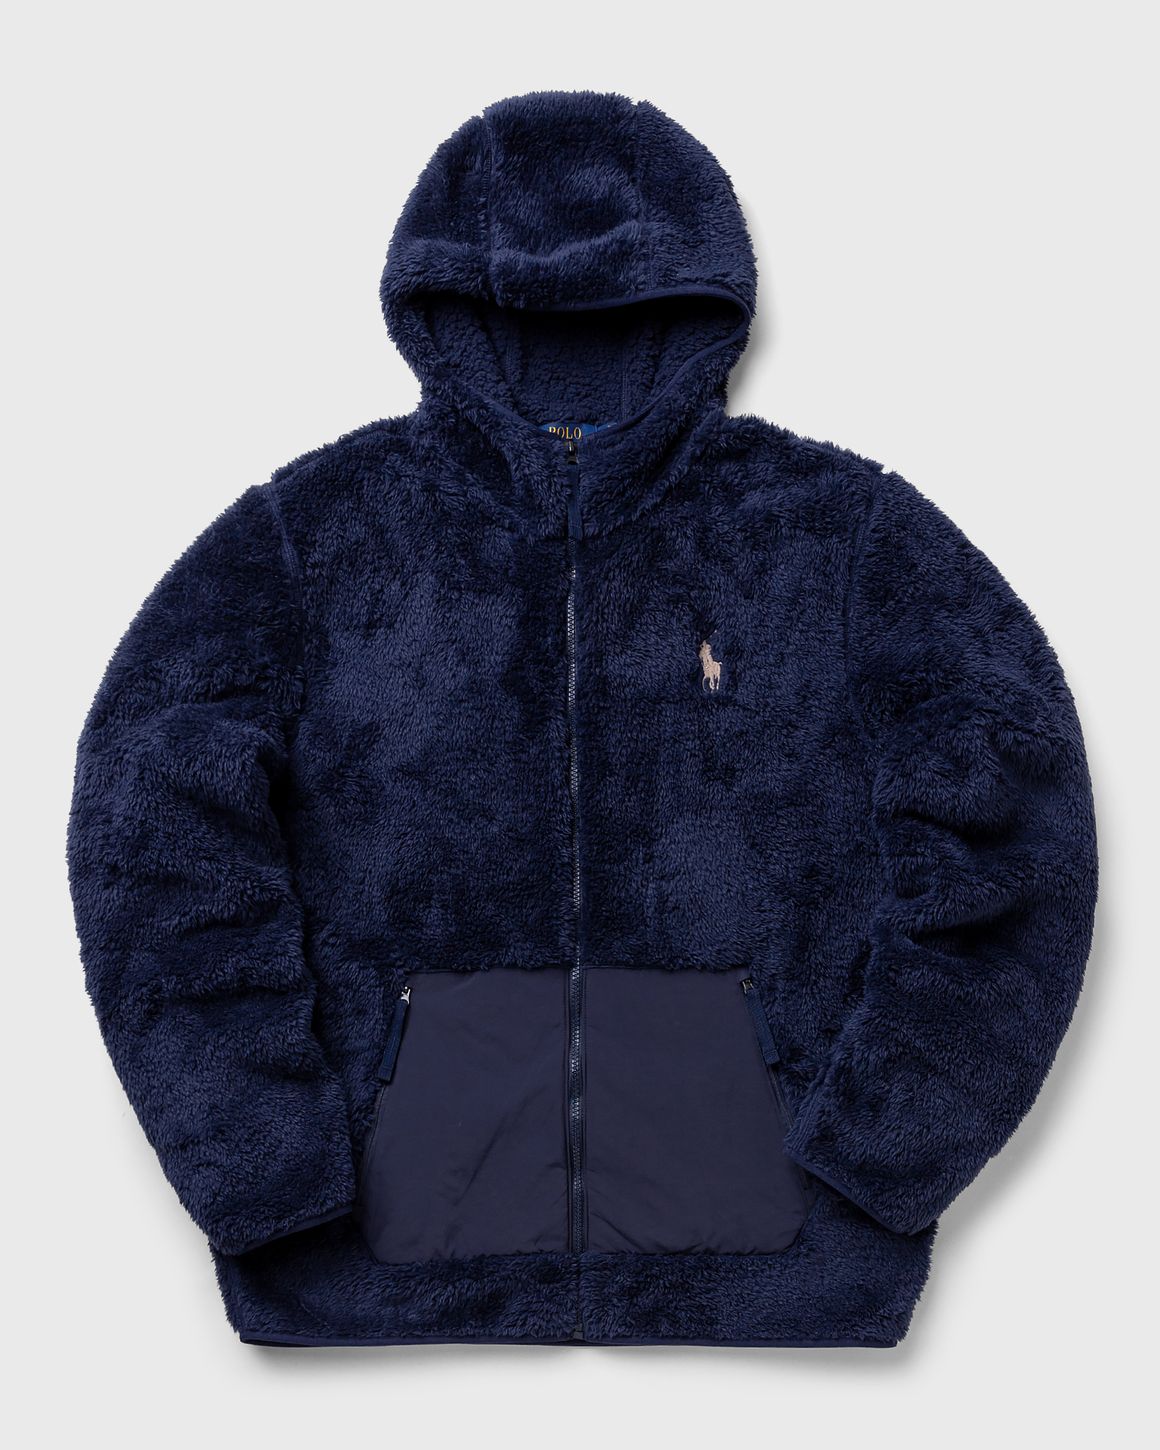 fleece jacket